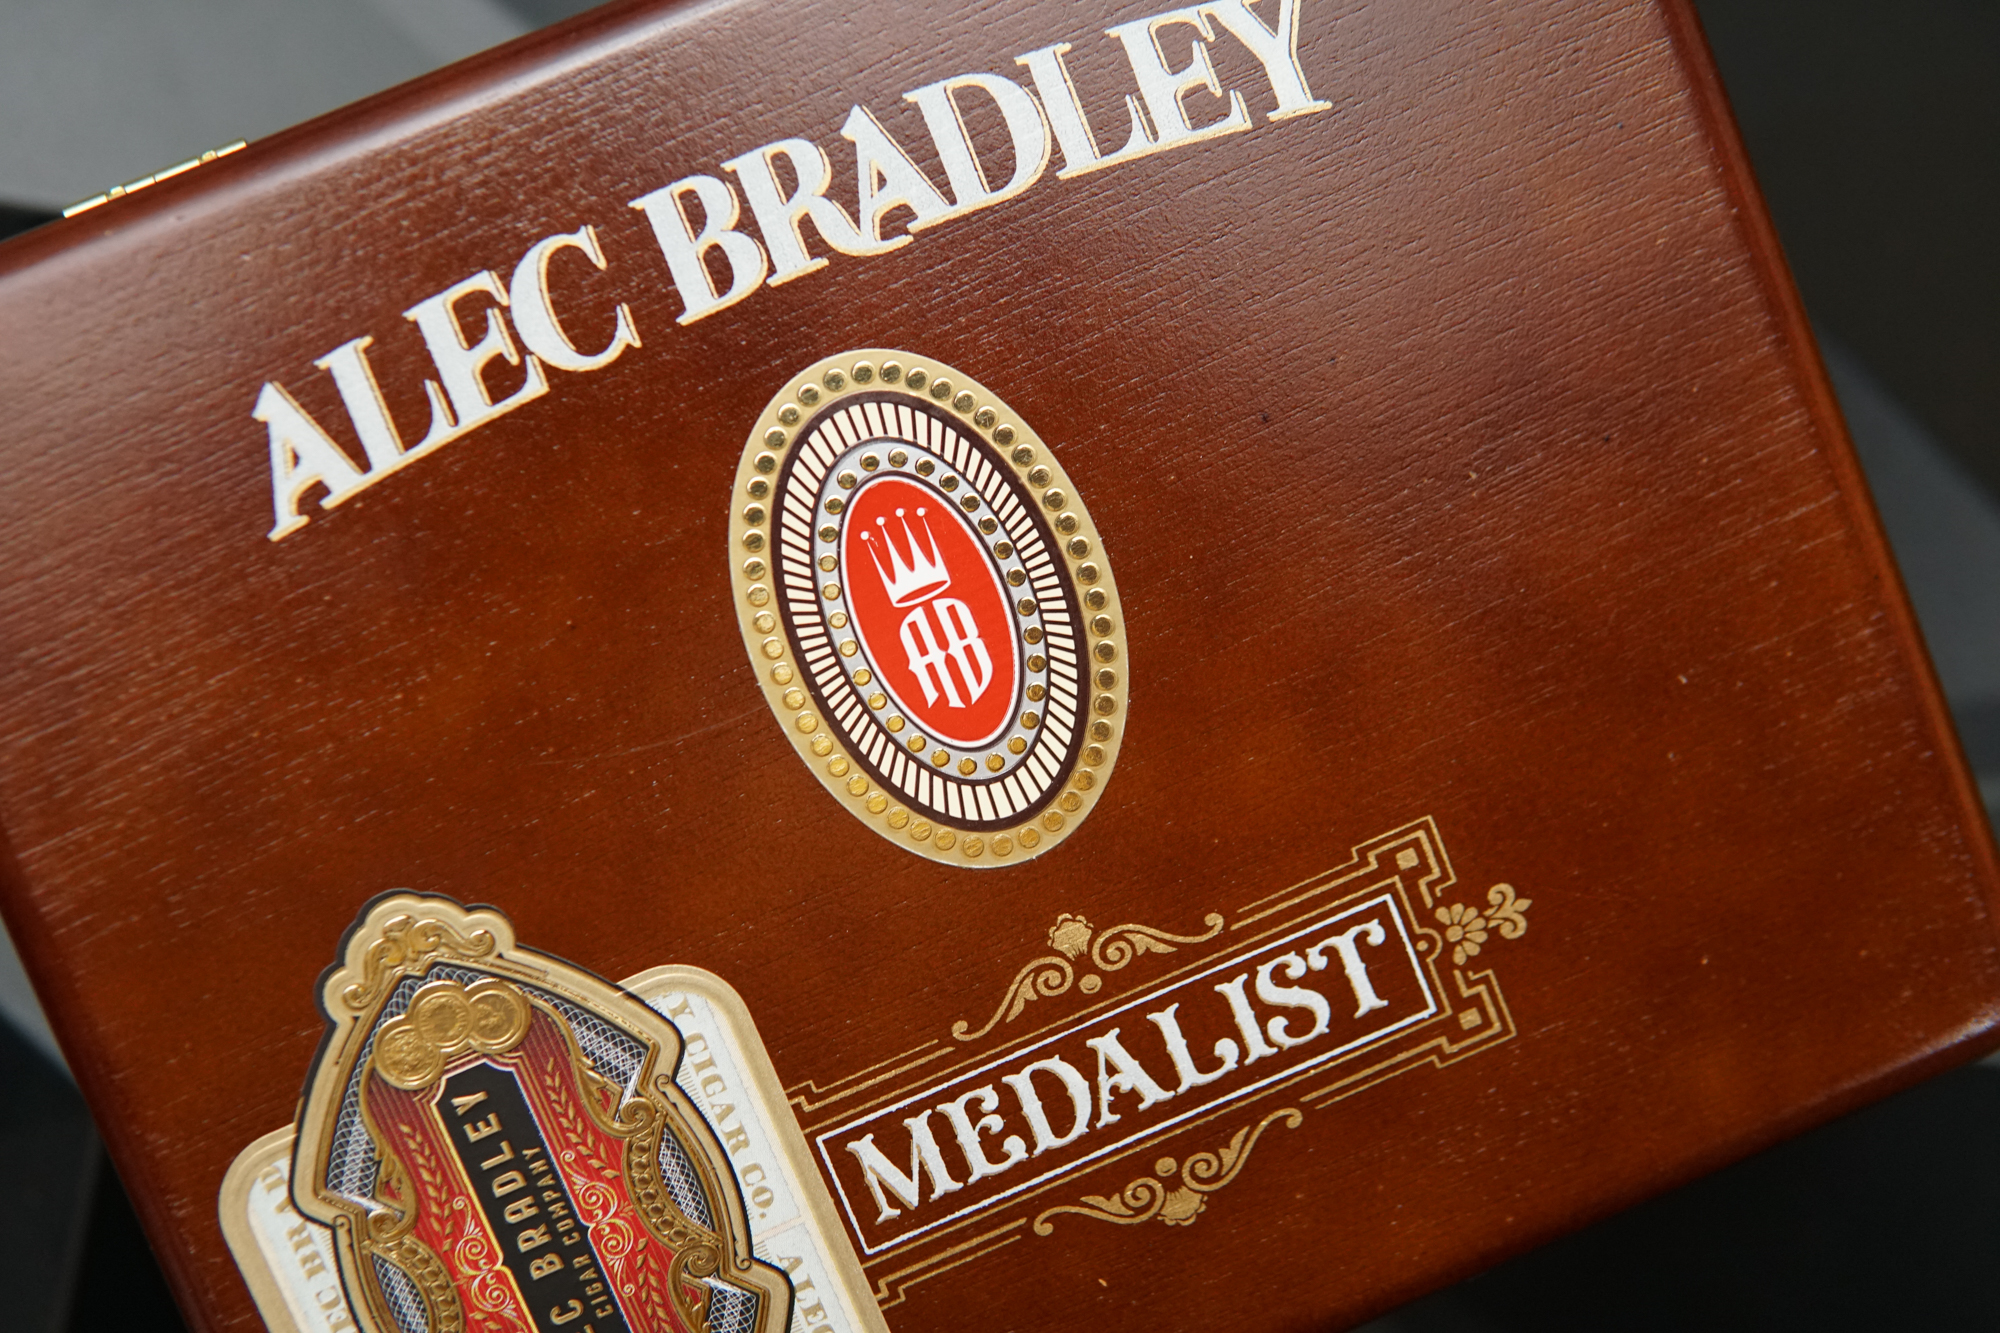 Alge Bradley Coyol Cigar Box